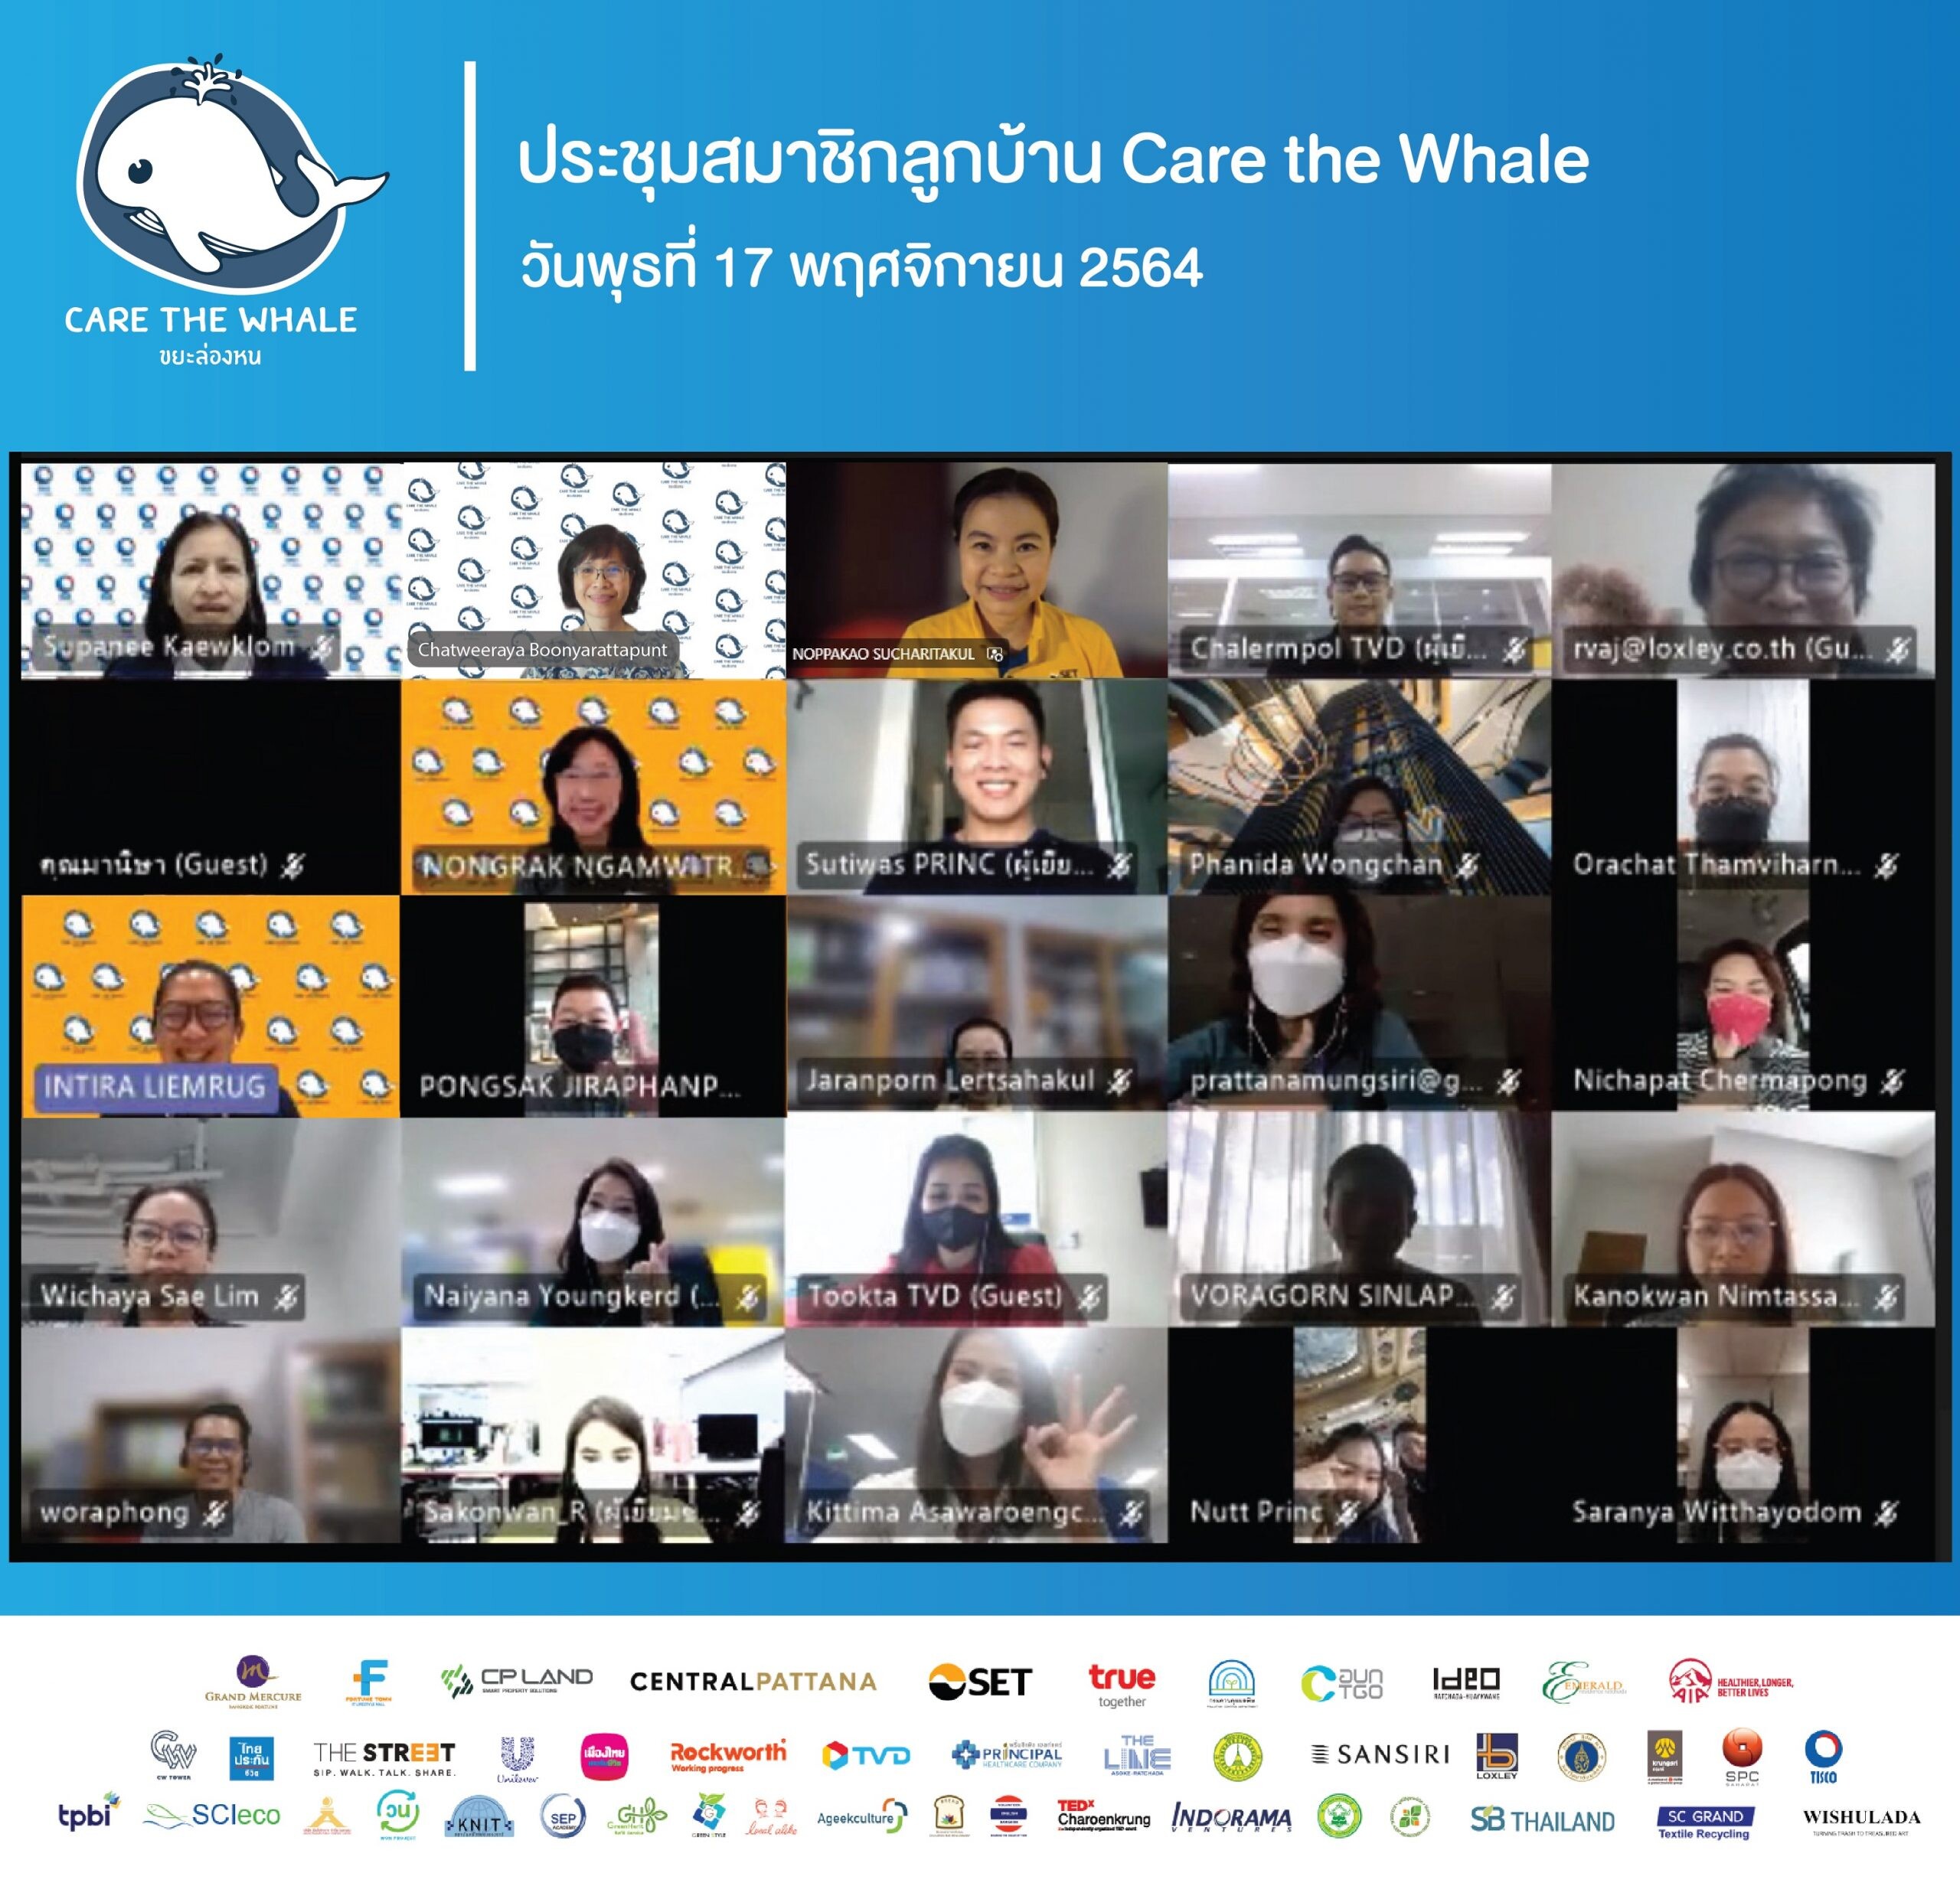 ลูกบ้านโครงการ Care the Whale "ขยะล่องหน" ร่วมแลกเปลี่ยนเรียนรู้การบริหารจัดการขยะ